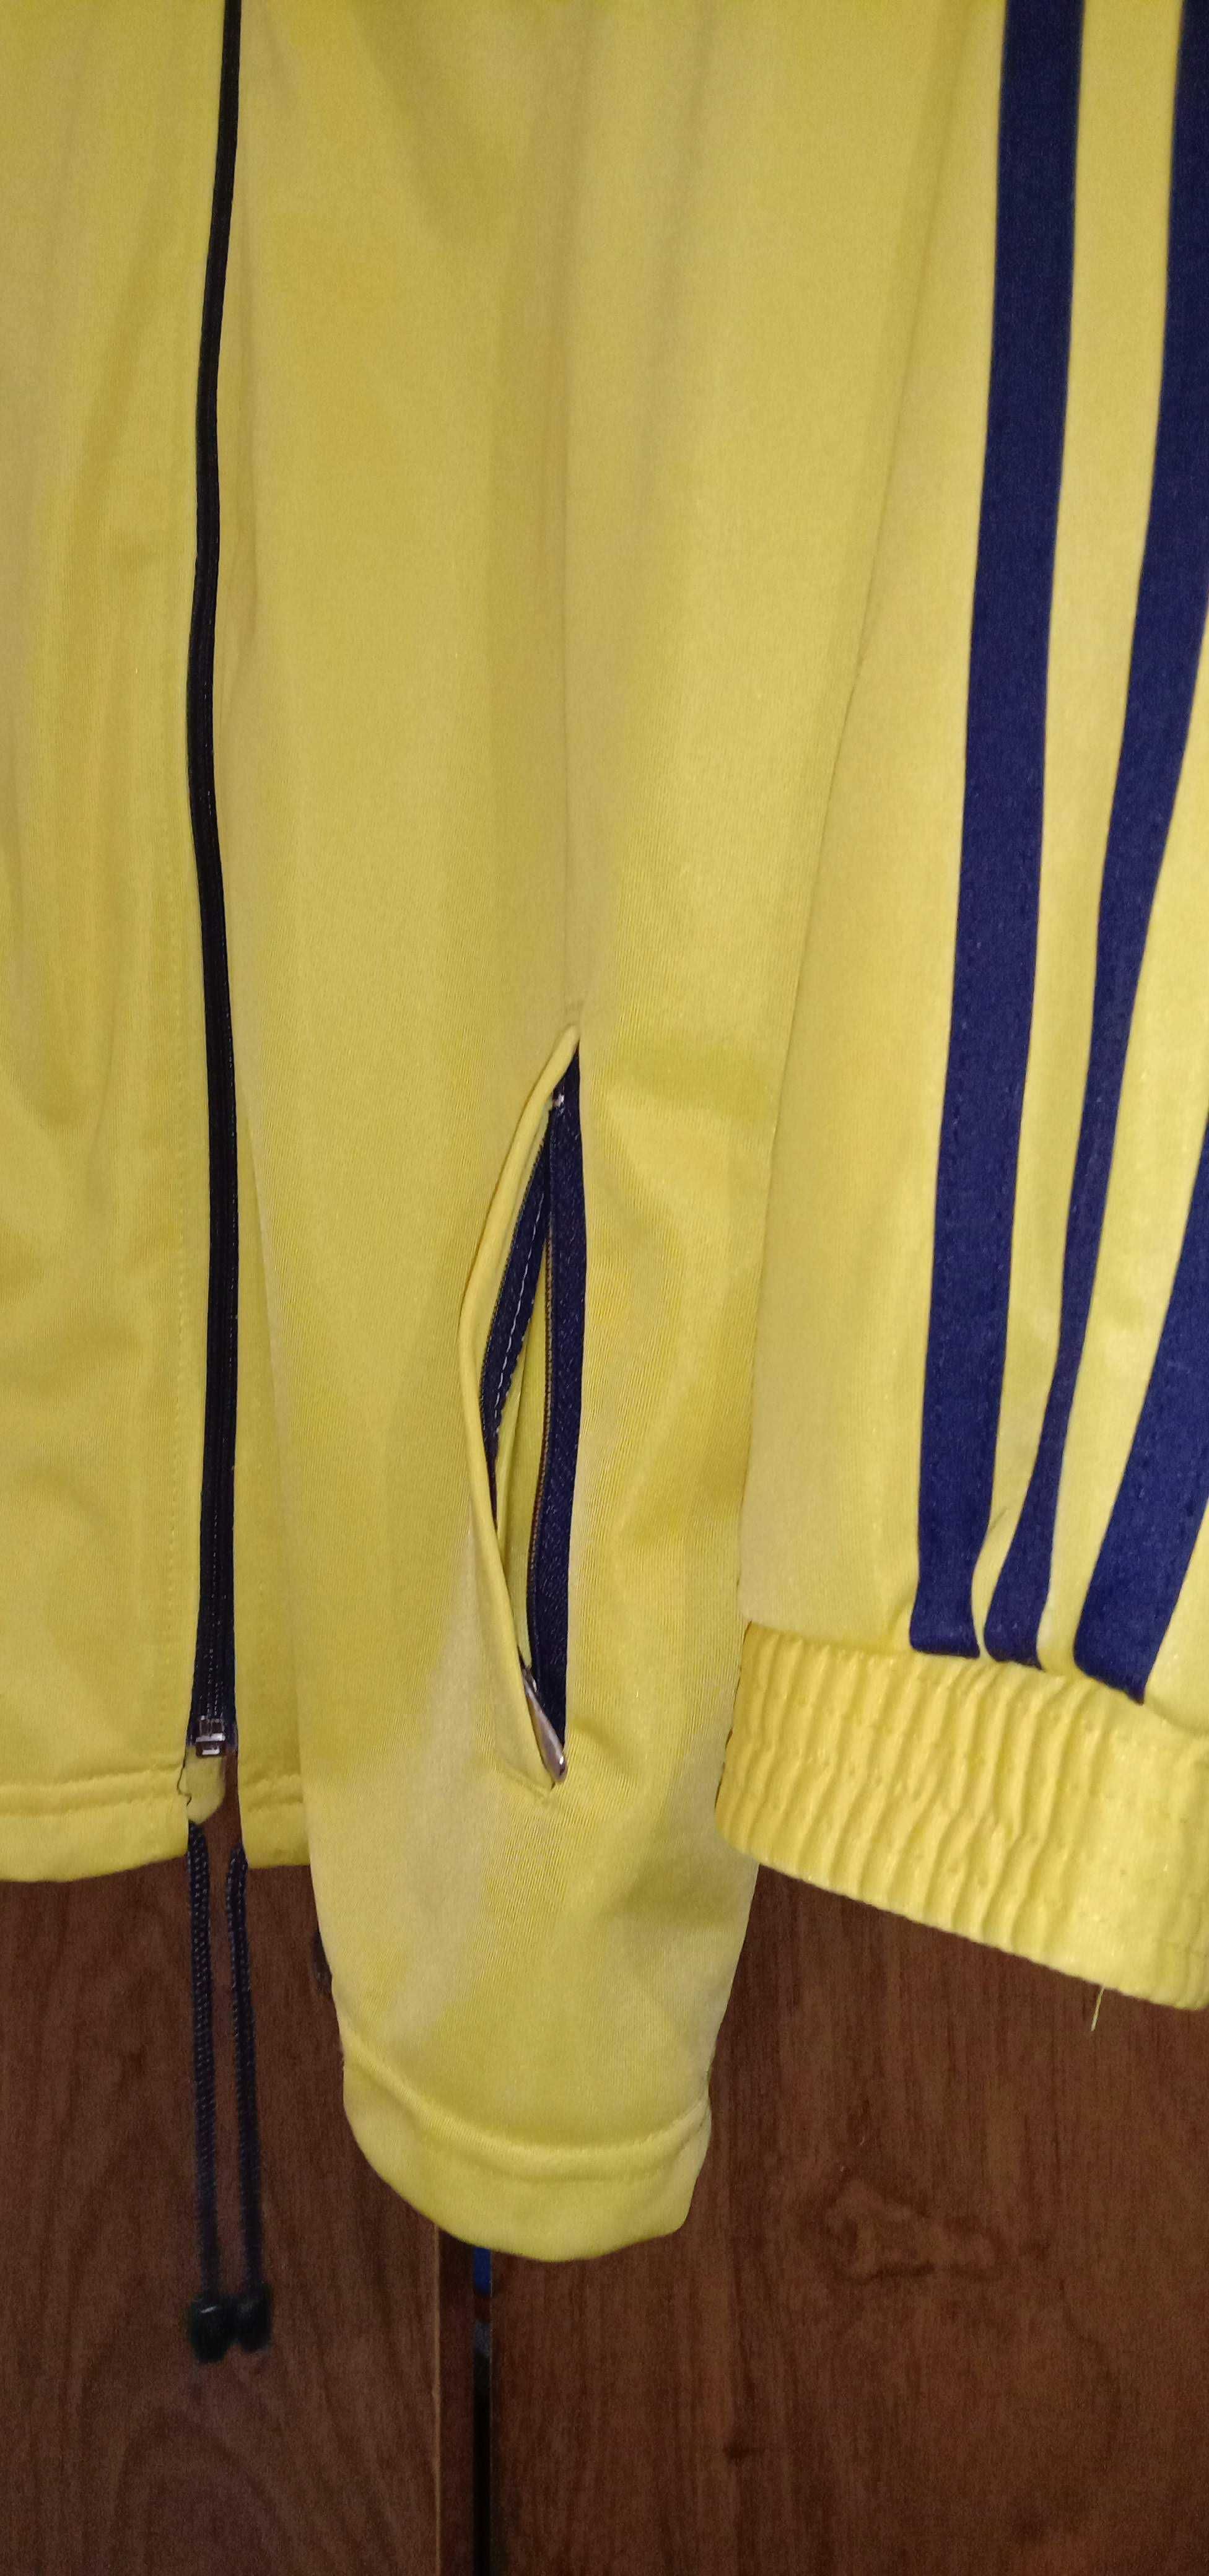 Спортивная кофта на молнии. Желтая с синим. Размер 44-46.